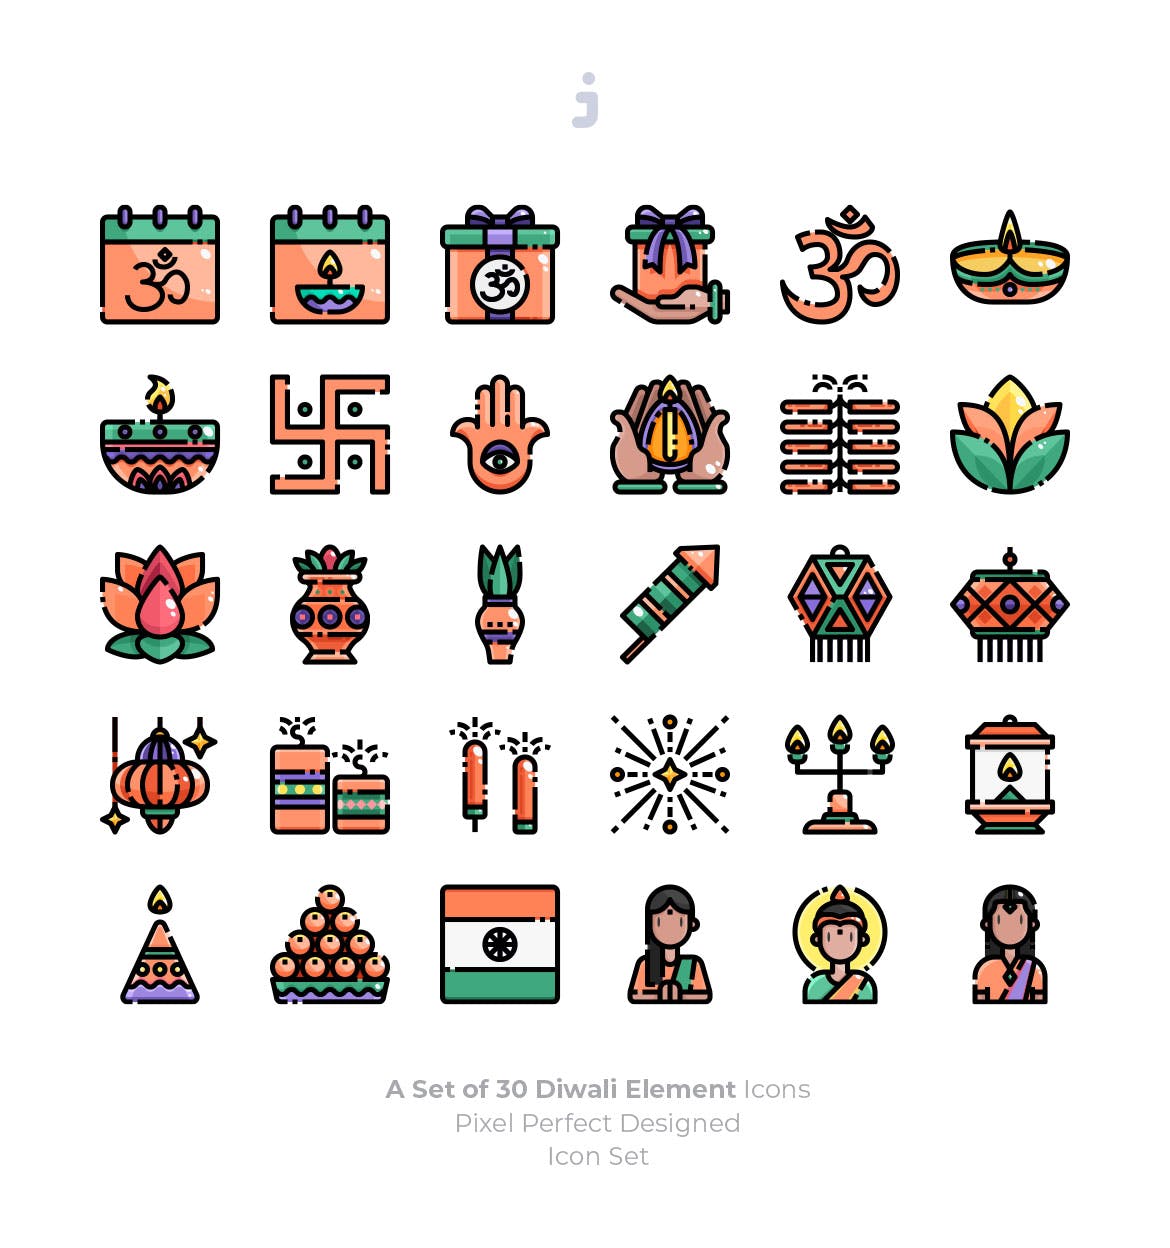 30枚印度万灯节排灯节节日主题图标素材 30 Diwali Icons插图(1)